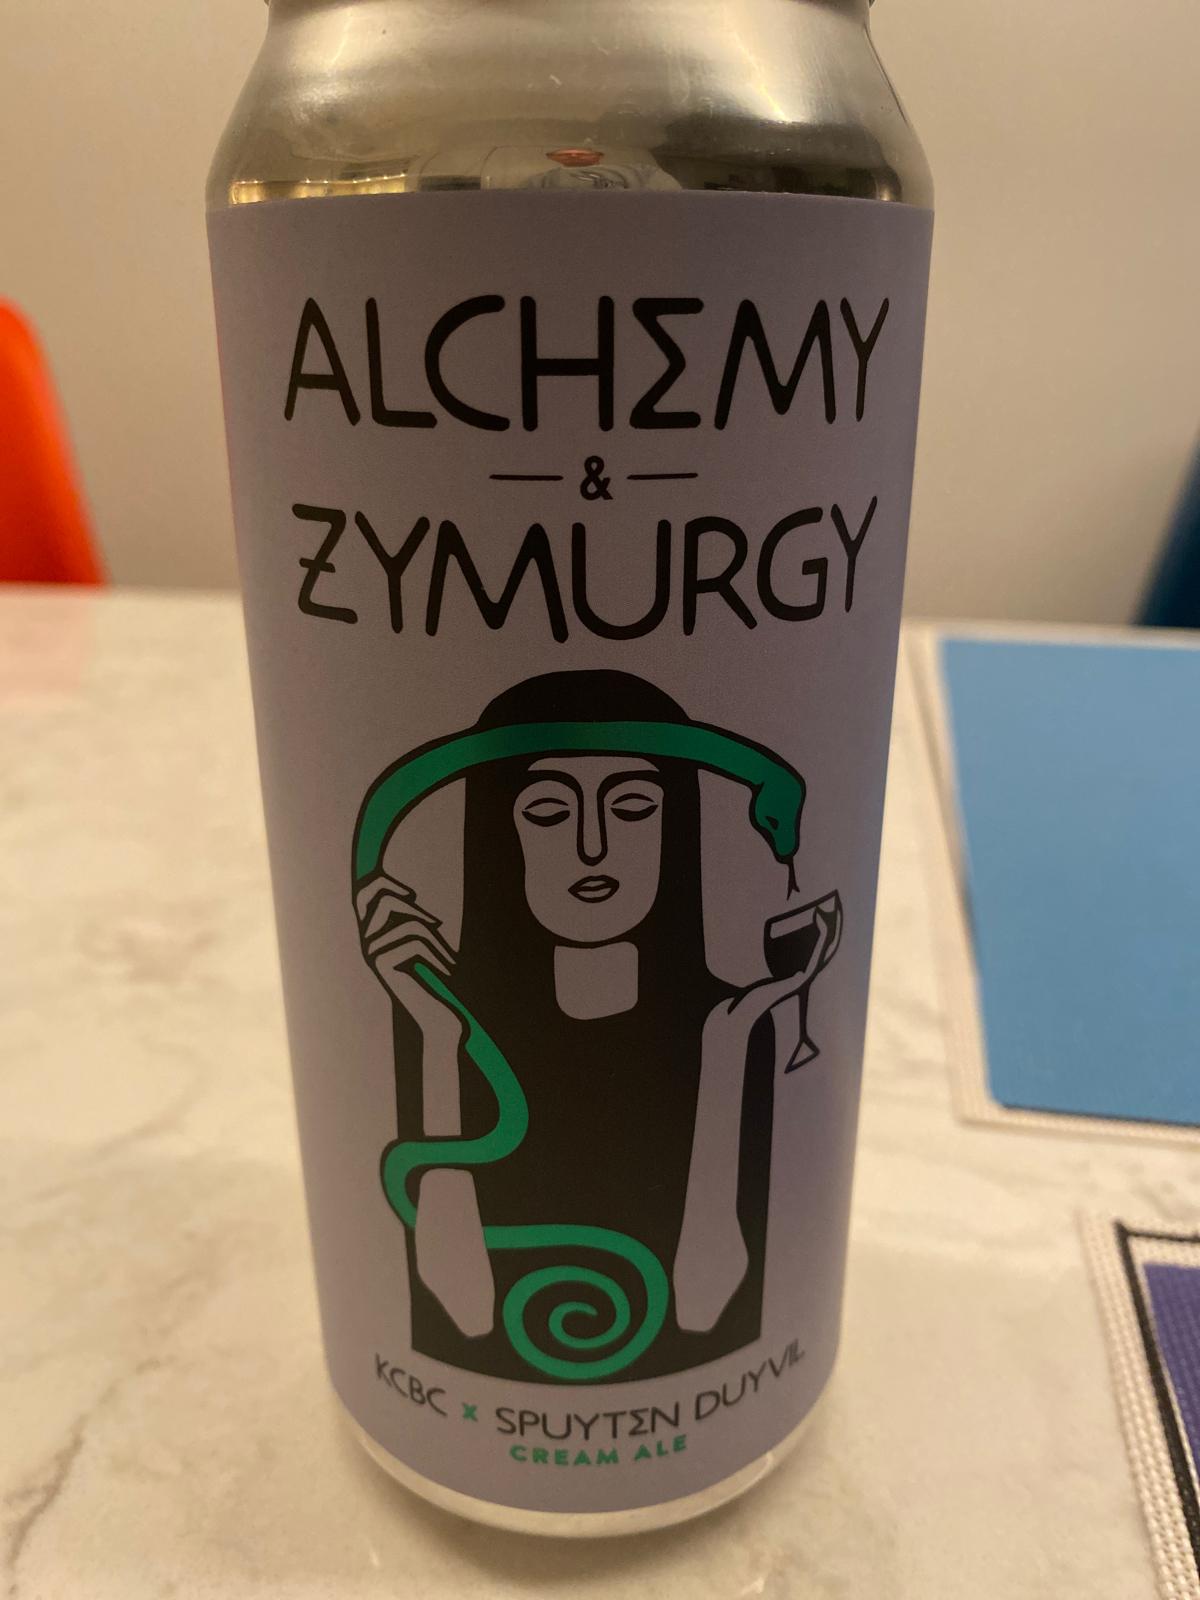 Alchemy & Zymurgy (Collaboration With Spuyten Duyvil)